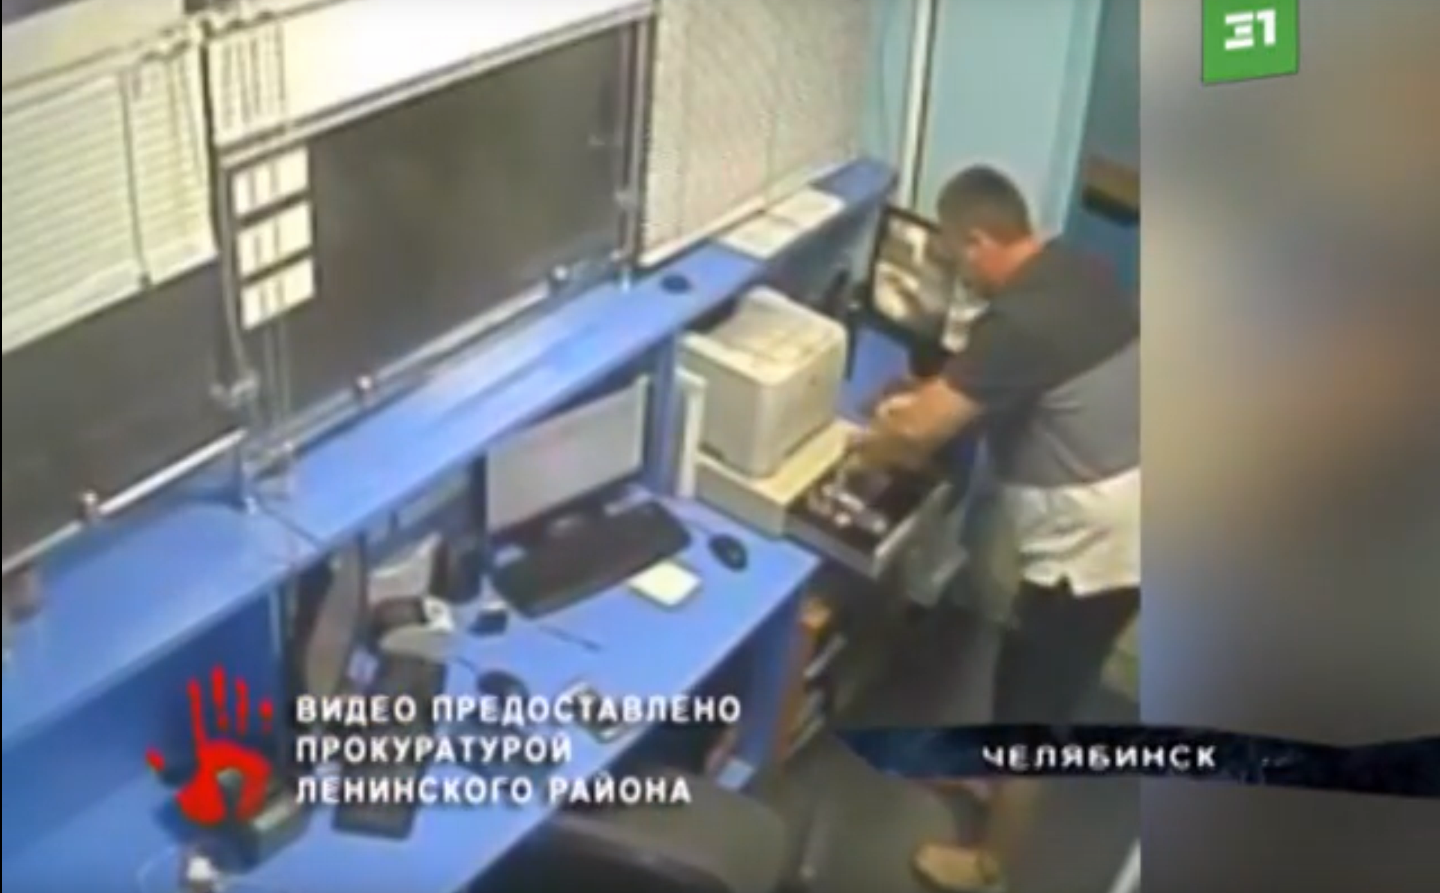 Житель Челябинска украл из БК 8 тыс. руб. и остался на свободе (+ВИДЕО)